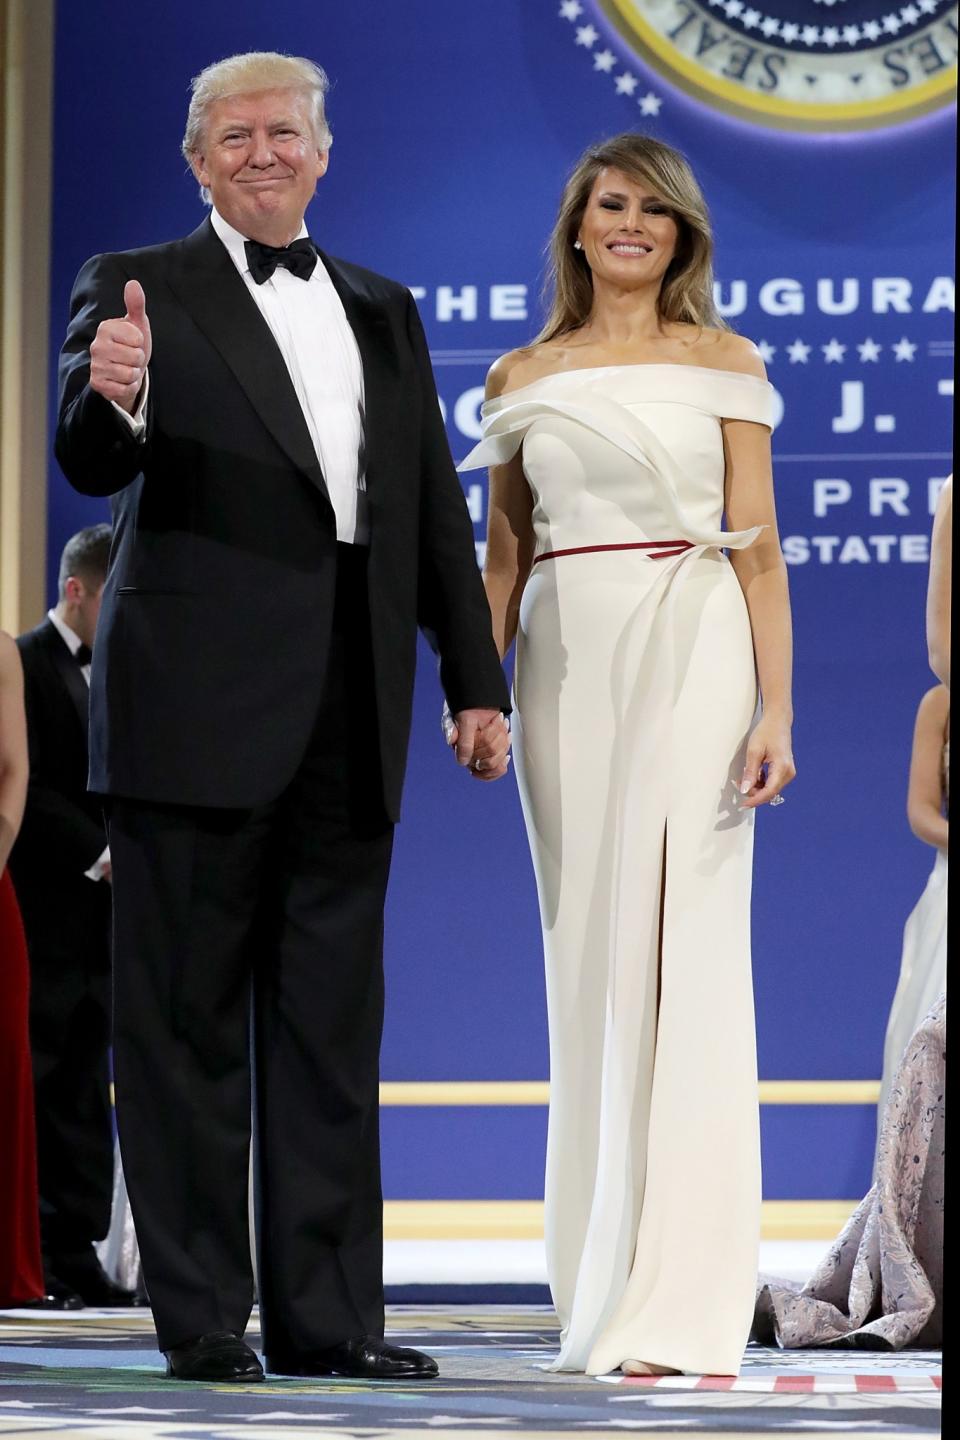 Melania Trump at the Inaugural Ball